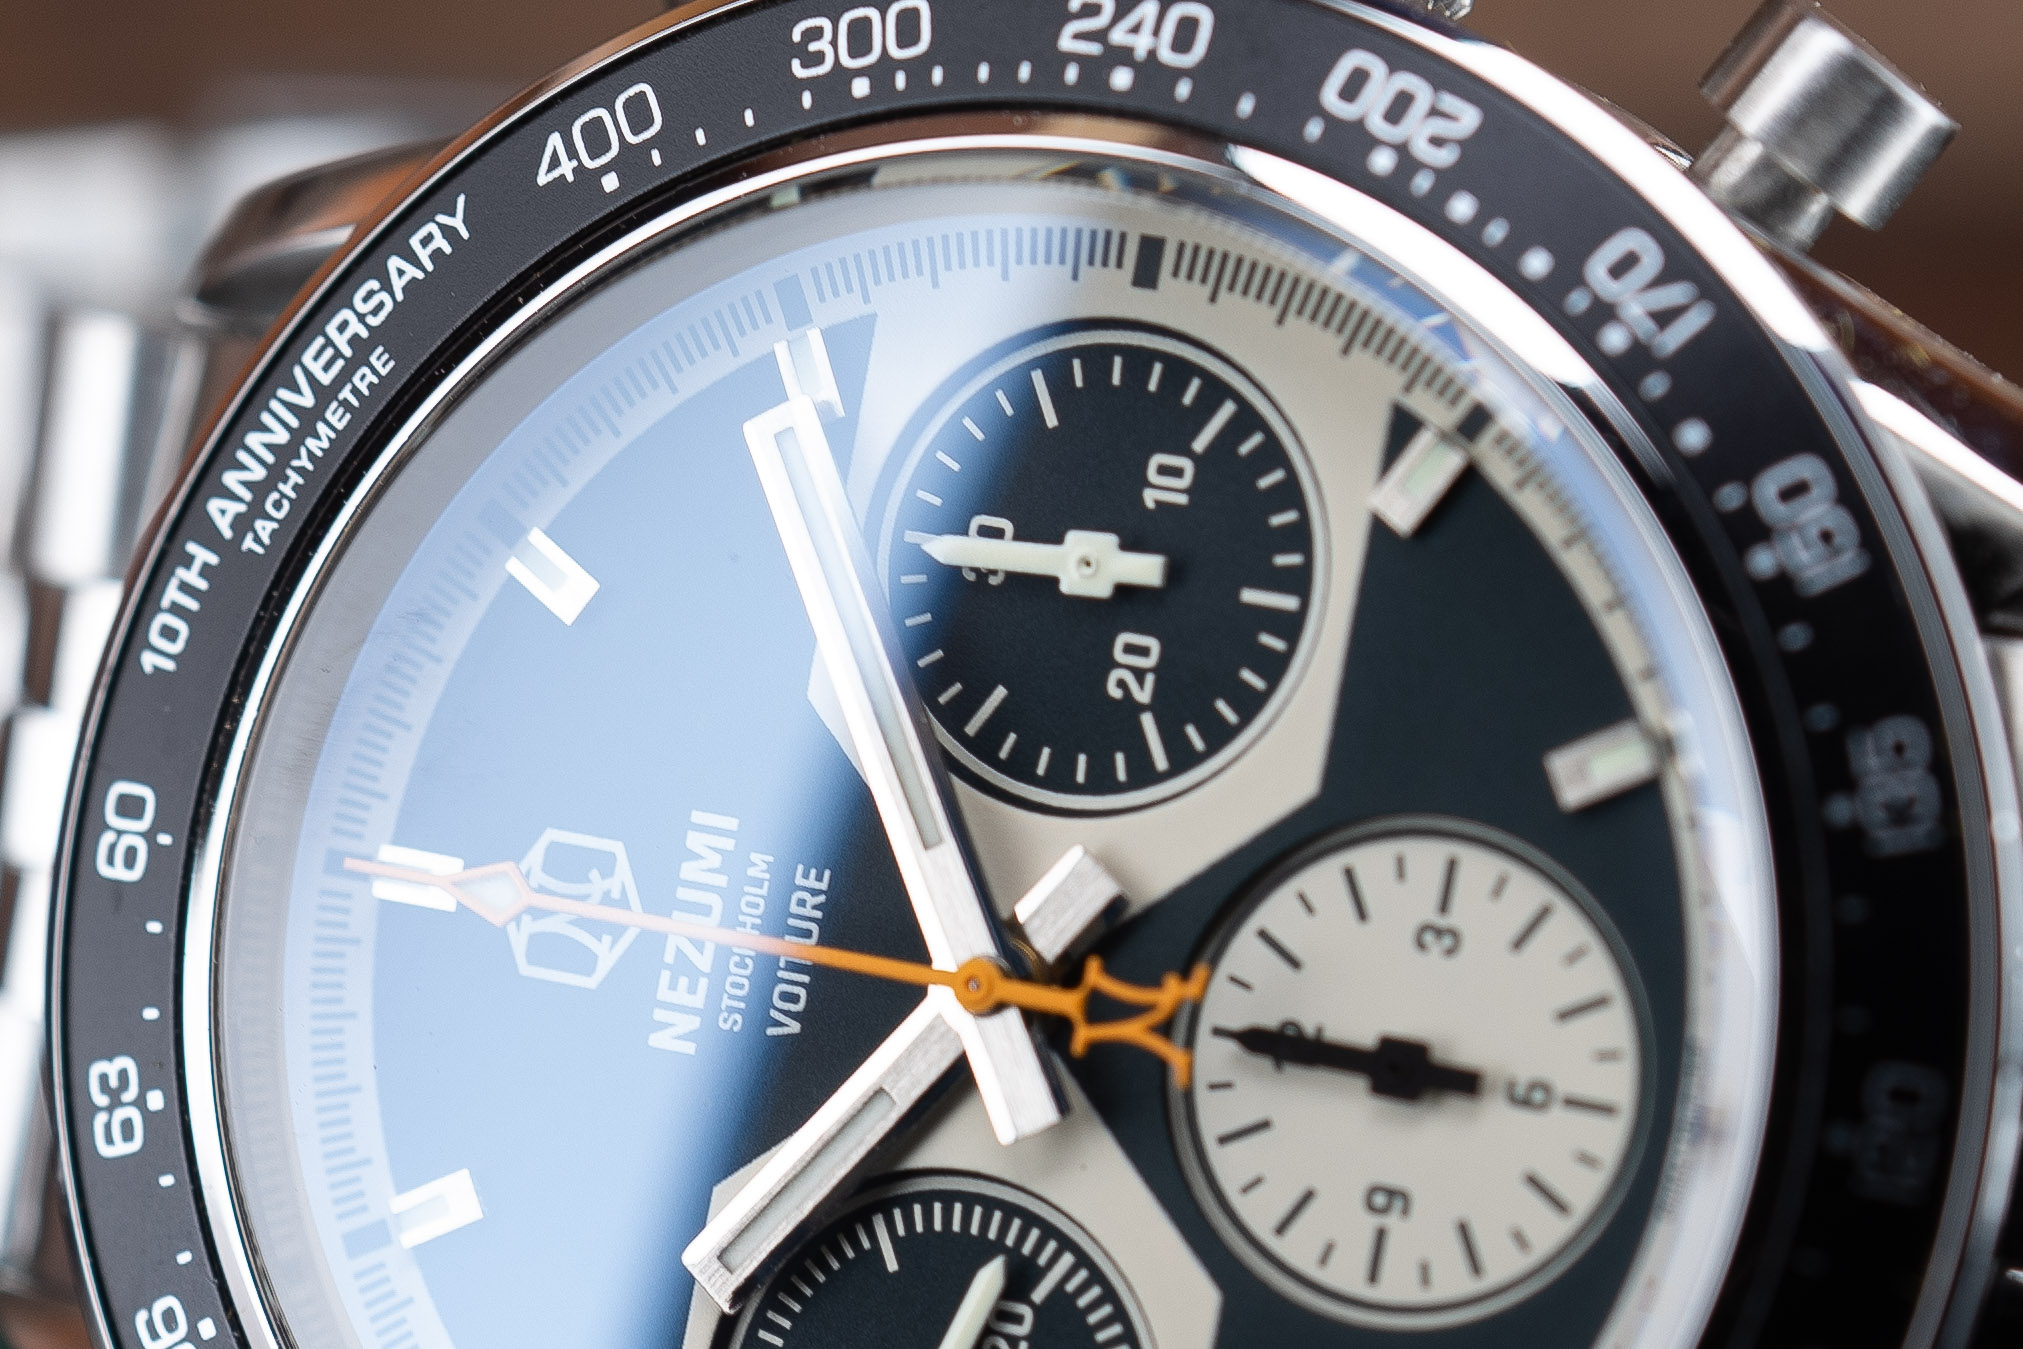 Nezumi Voiture Ref. VM1S.201 mechanical chronograph watch. Closeup.